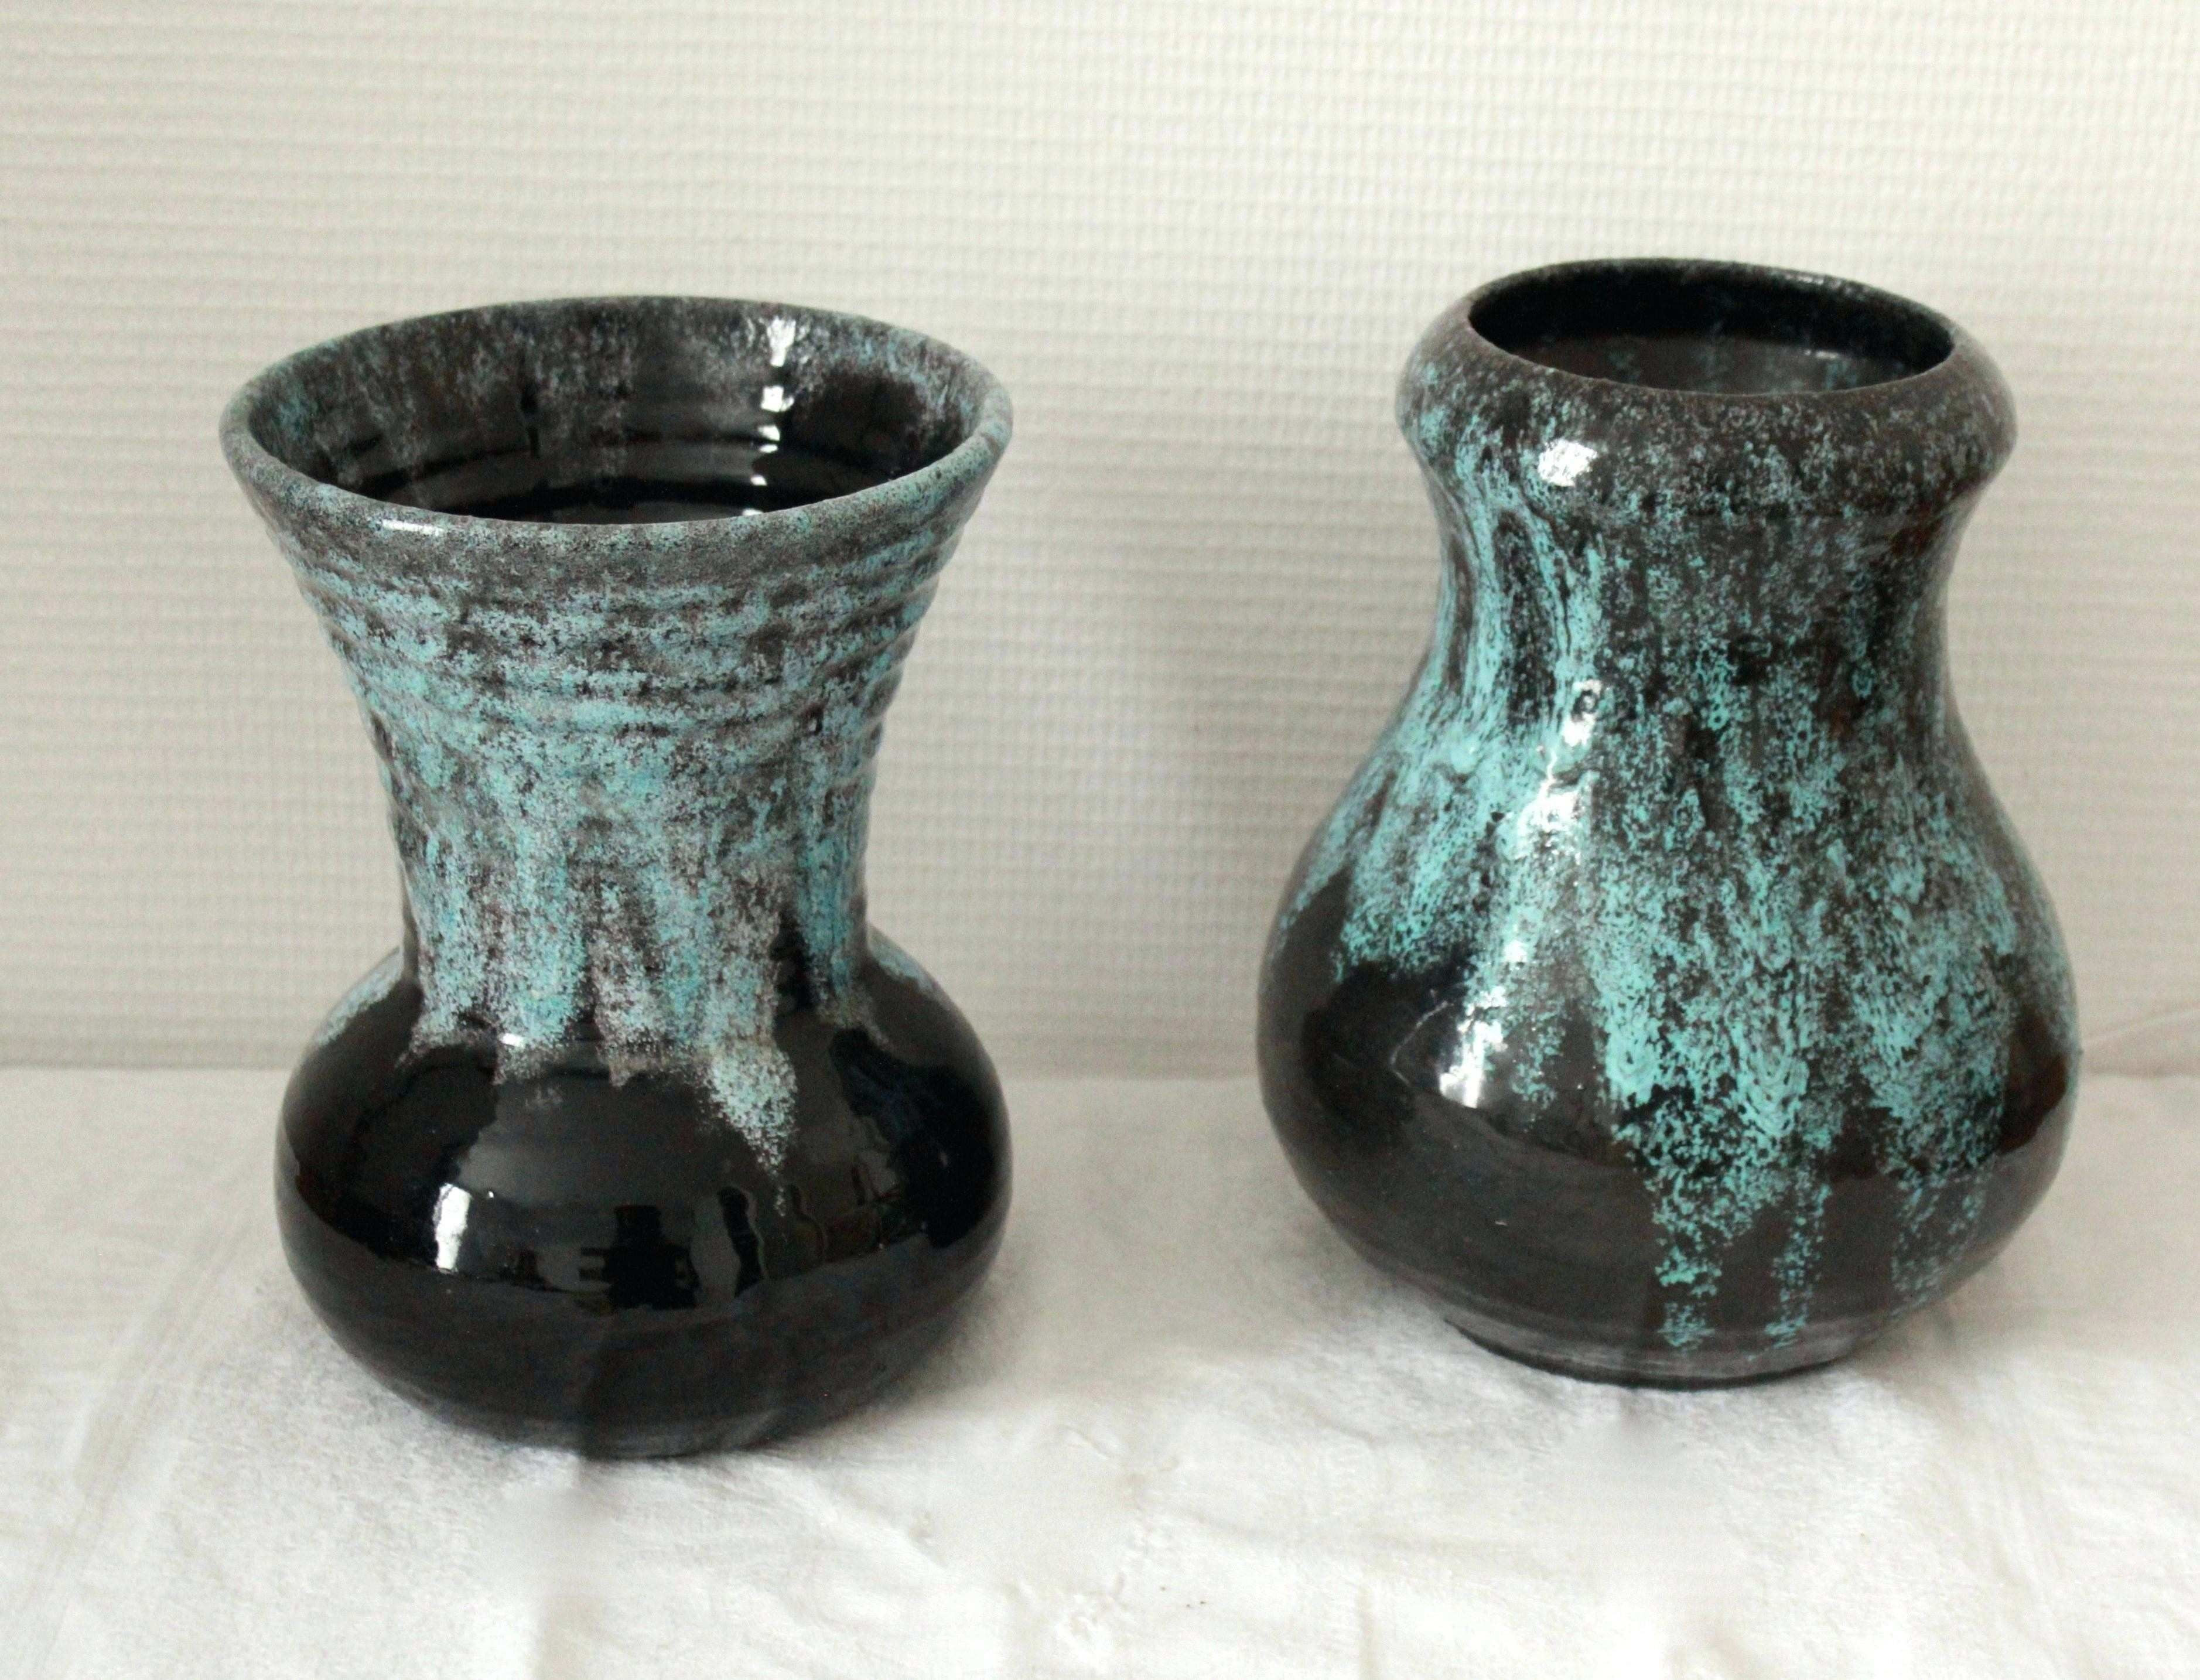 lalique vases value of 23 blue crystal vase the weekly world inside light green living room elegant living room blue glass vase best